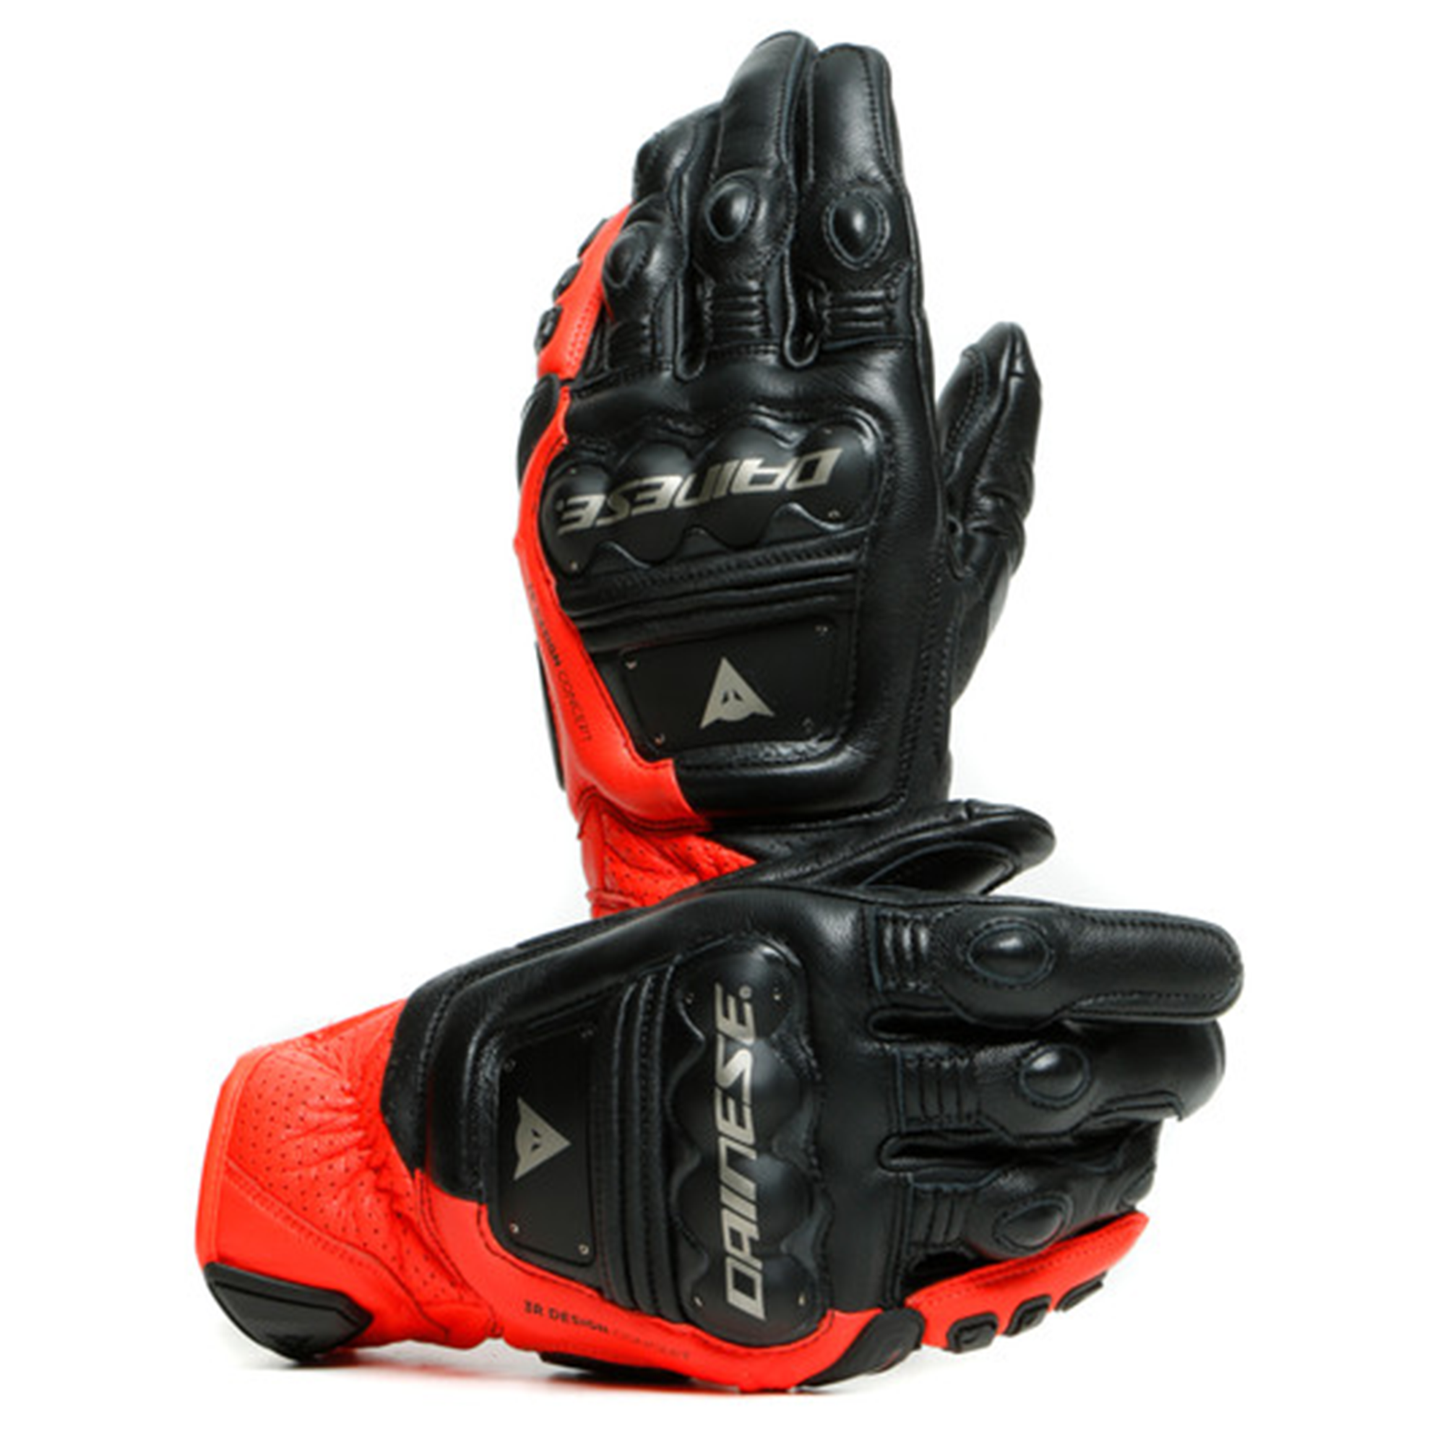 Dainese 4-Stroke 2 Gloves - Black/Flo Red